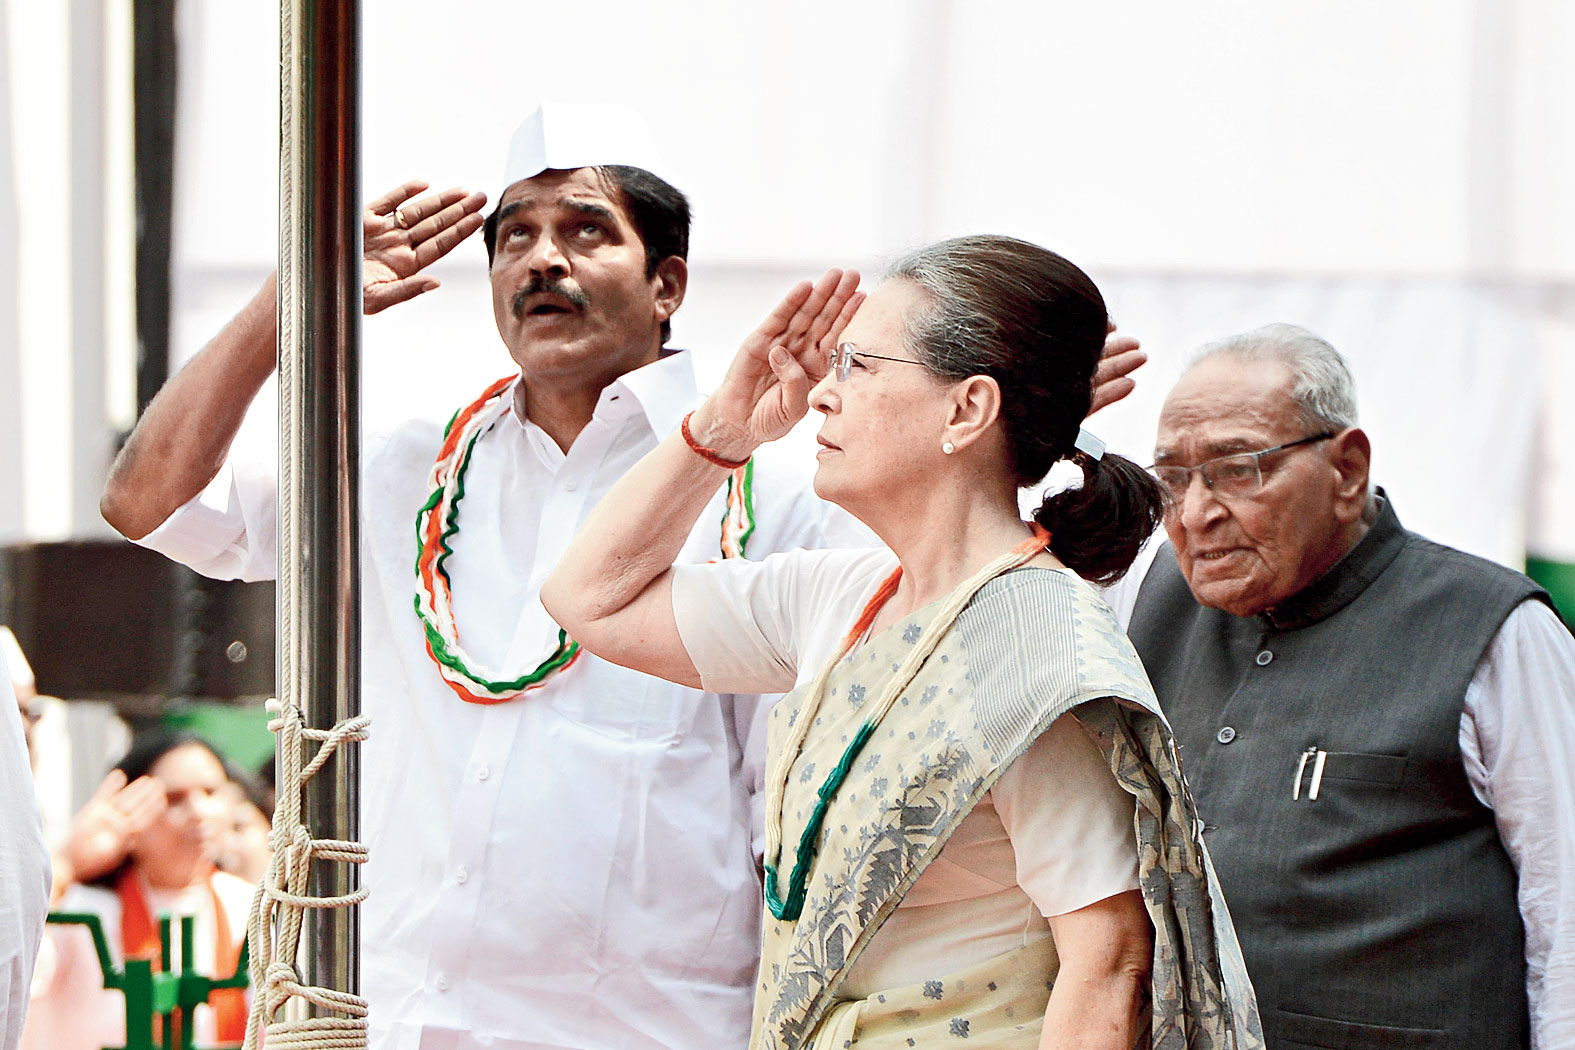 Sonia Gandhi flags truth, non-violence & patriotism